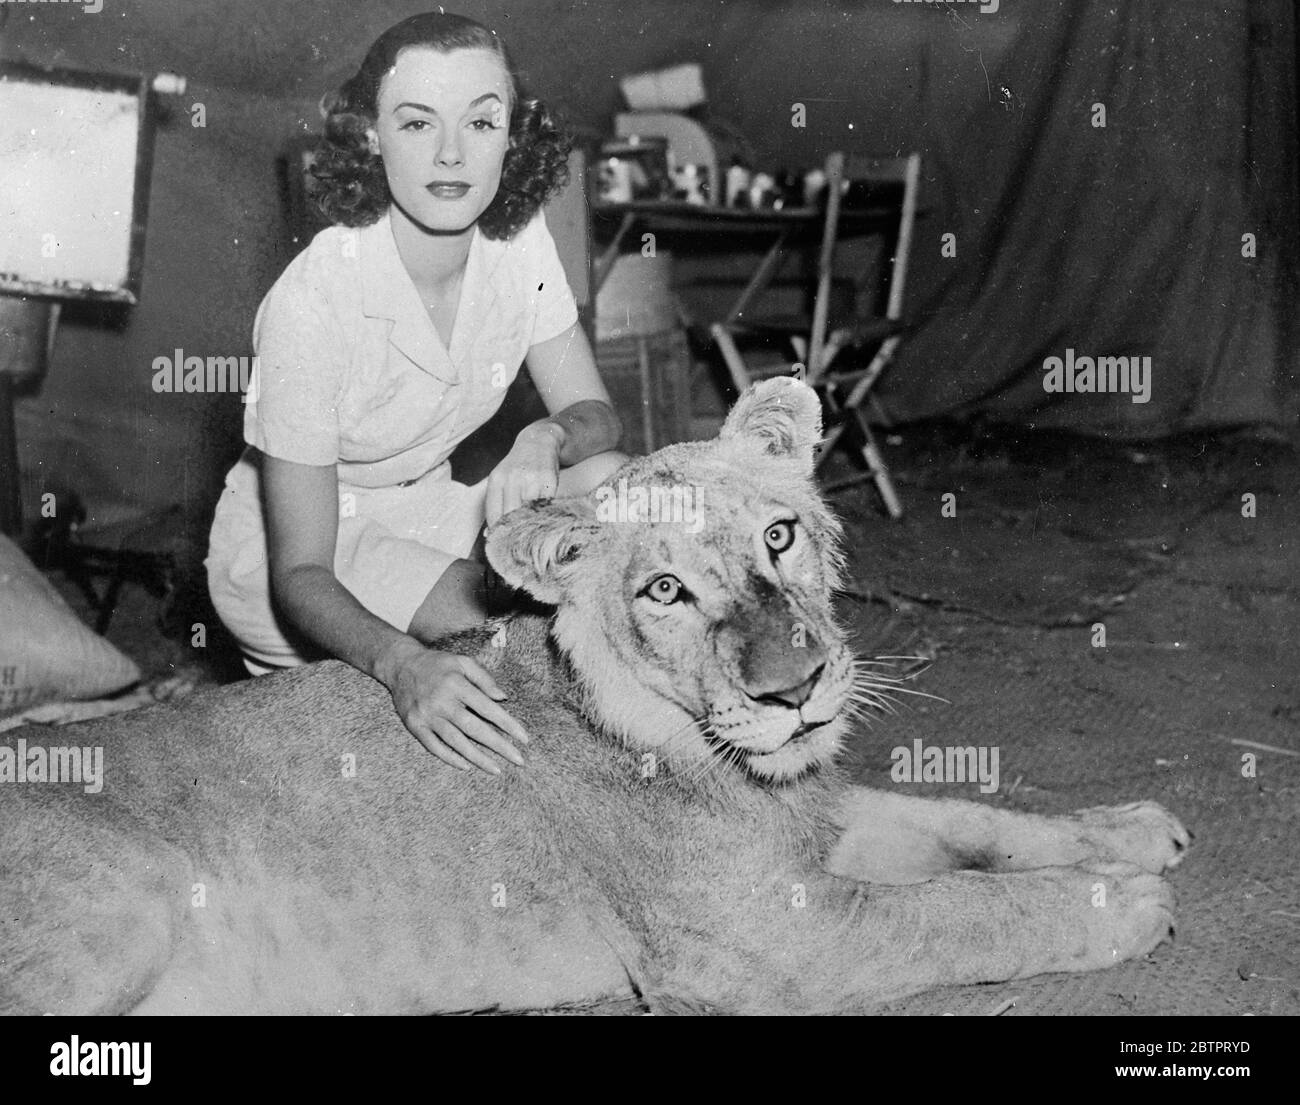 Filmfreunde! Eleanor Holm Jarrett, die Filmschauspielerin freundet sich mit einem der Löwen an, die in ihrem neuen Film "Tarzan's Revenge" in Hollywood mitwirken. Die Löwin scheint jedoch so sanft zu sein, wie eine ihrer Rasse es sein kann. Stockfoto